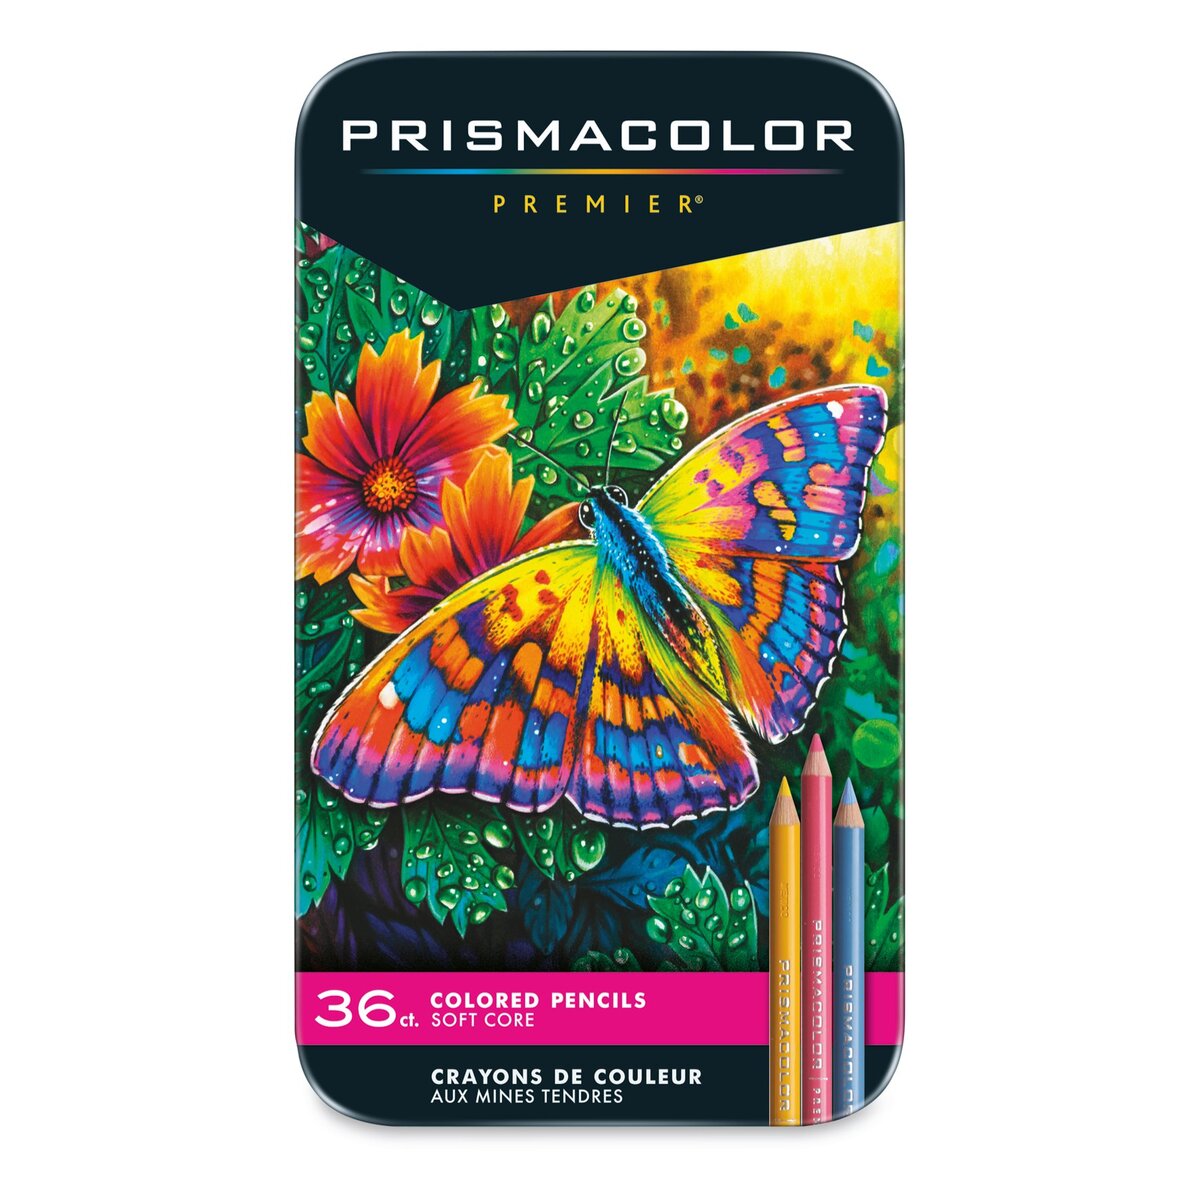 Prismacolor Watercolor Pencils - Set of 36 pencils - SAN 4066